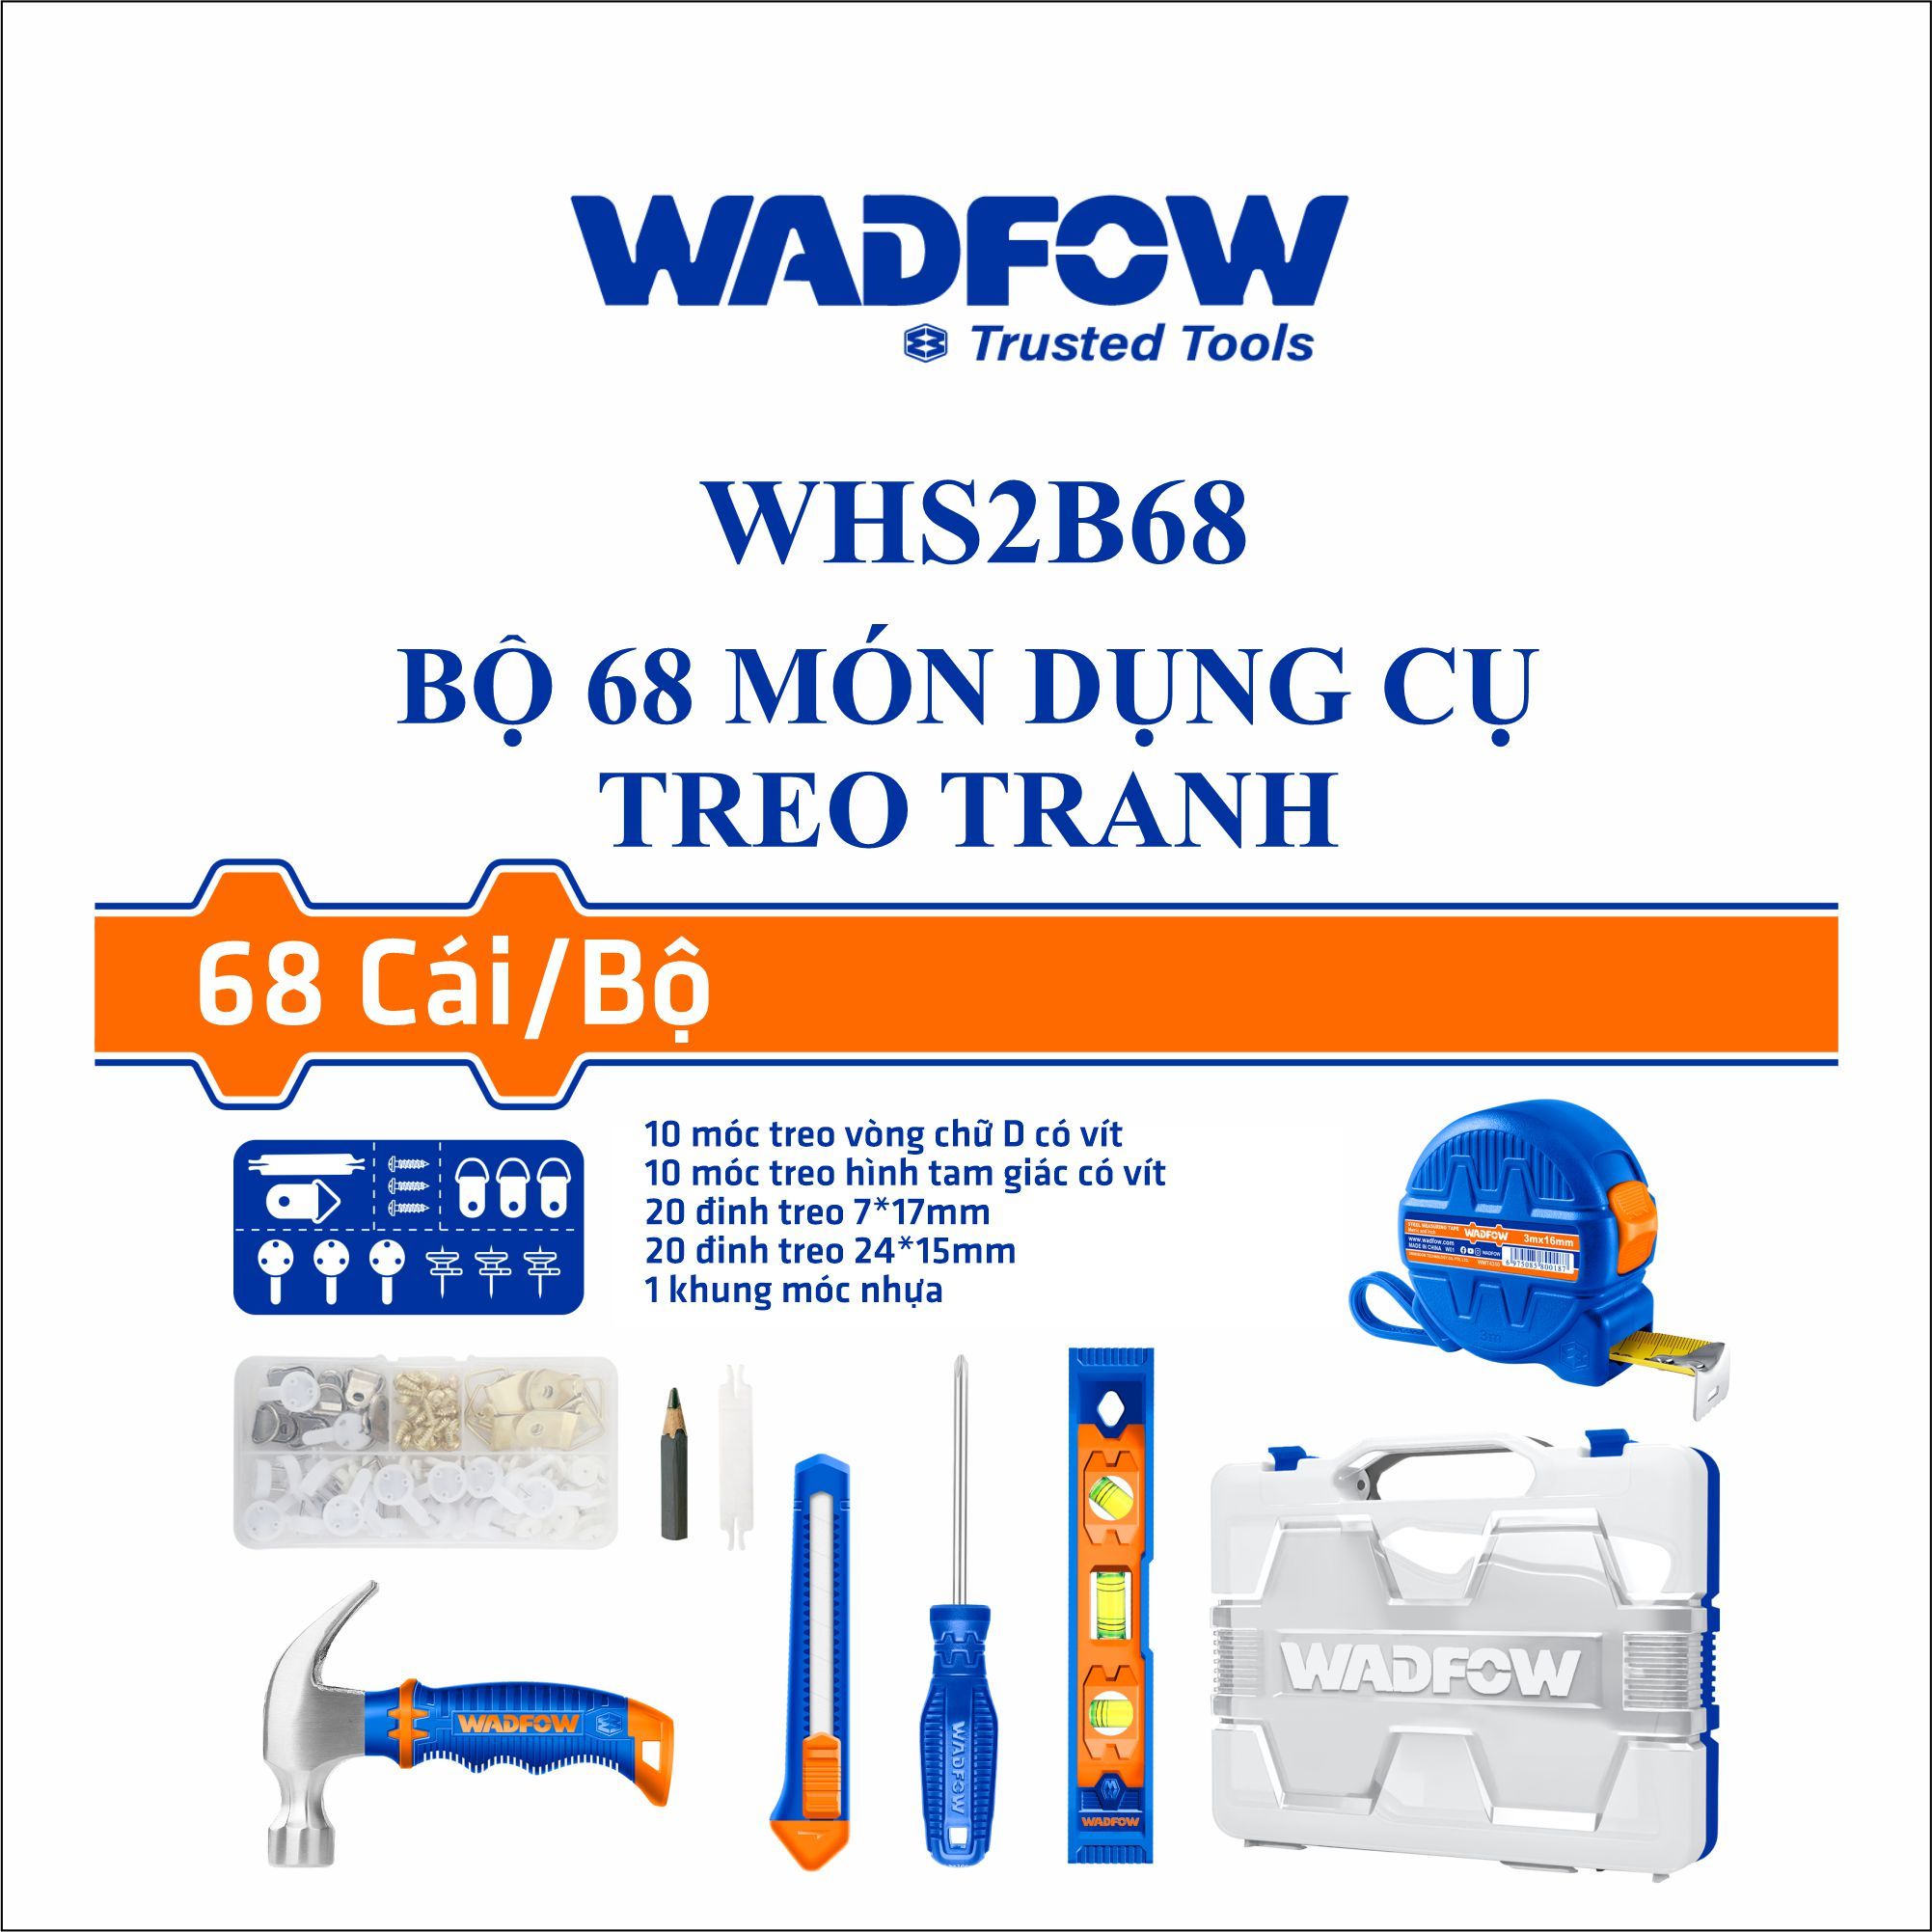  Bộ 68 món dụng cụ treo tranh WADFOW WHS2B68 